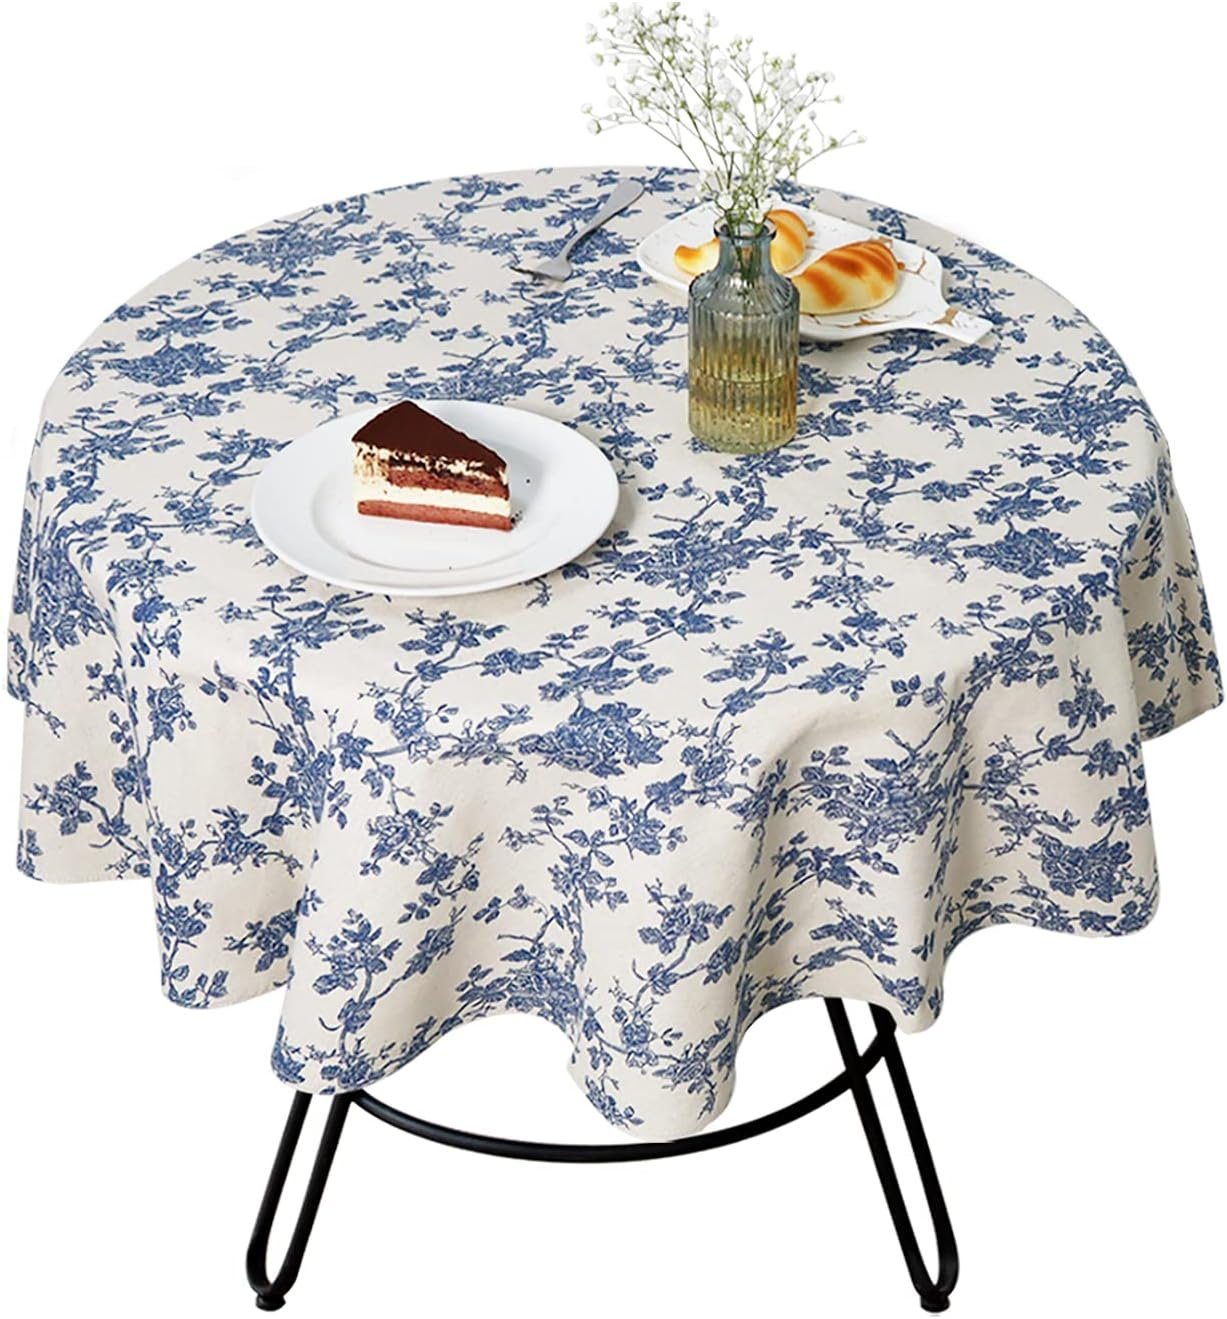 FELIXLEO Tischdecke Tischdecke Abwaschbar Runde Baumwolle Leinen Tischtuch 120cm Blaue